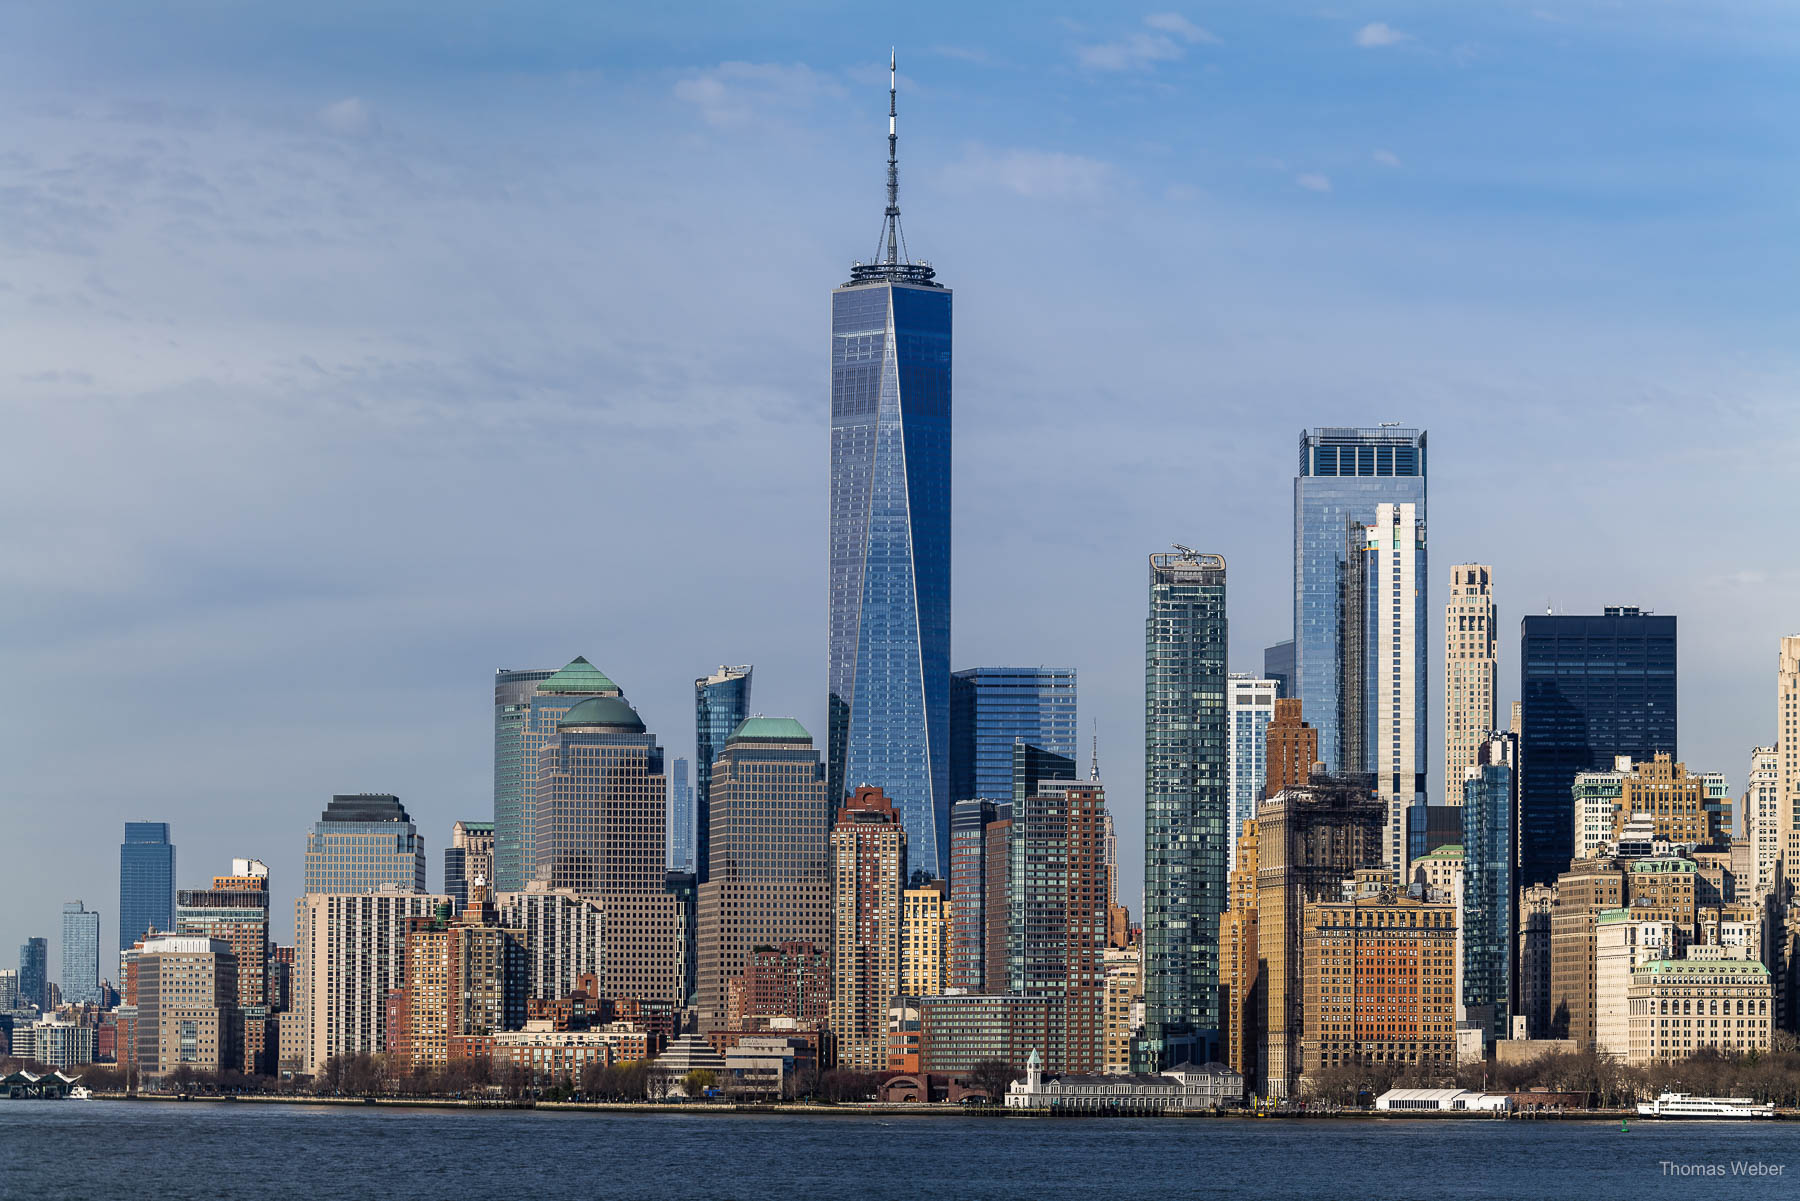 Fahrt mit der Staten Island Ferry von Manhattan mit Blick auf die Statue of Liberty in New York City, USA, Fotograf Thomas Weber aus Oldenburg